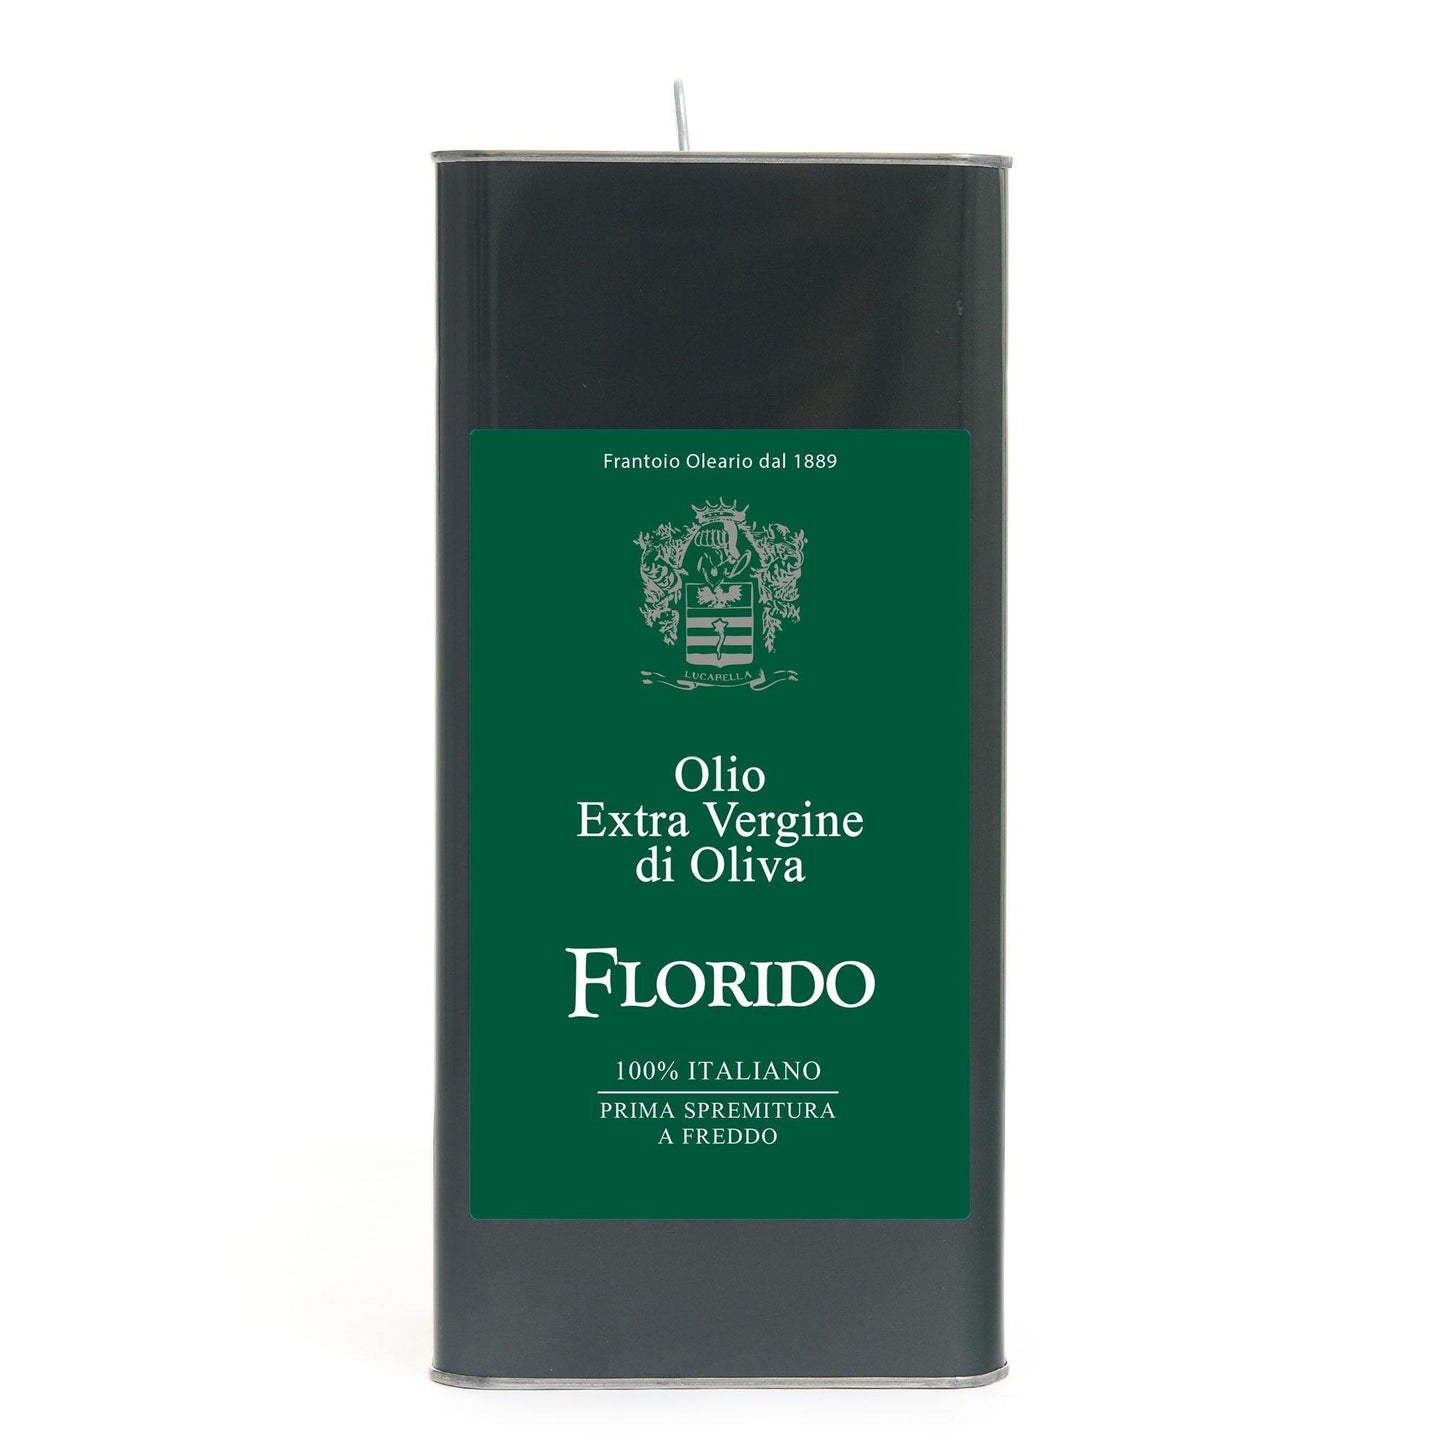 Lattina di Olio extravergine di oliva Florido da lt 5 - L'Acropoli di Puglia